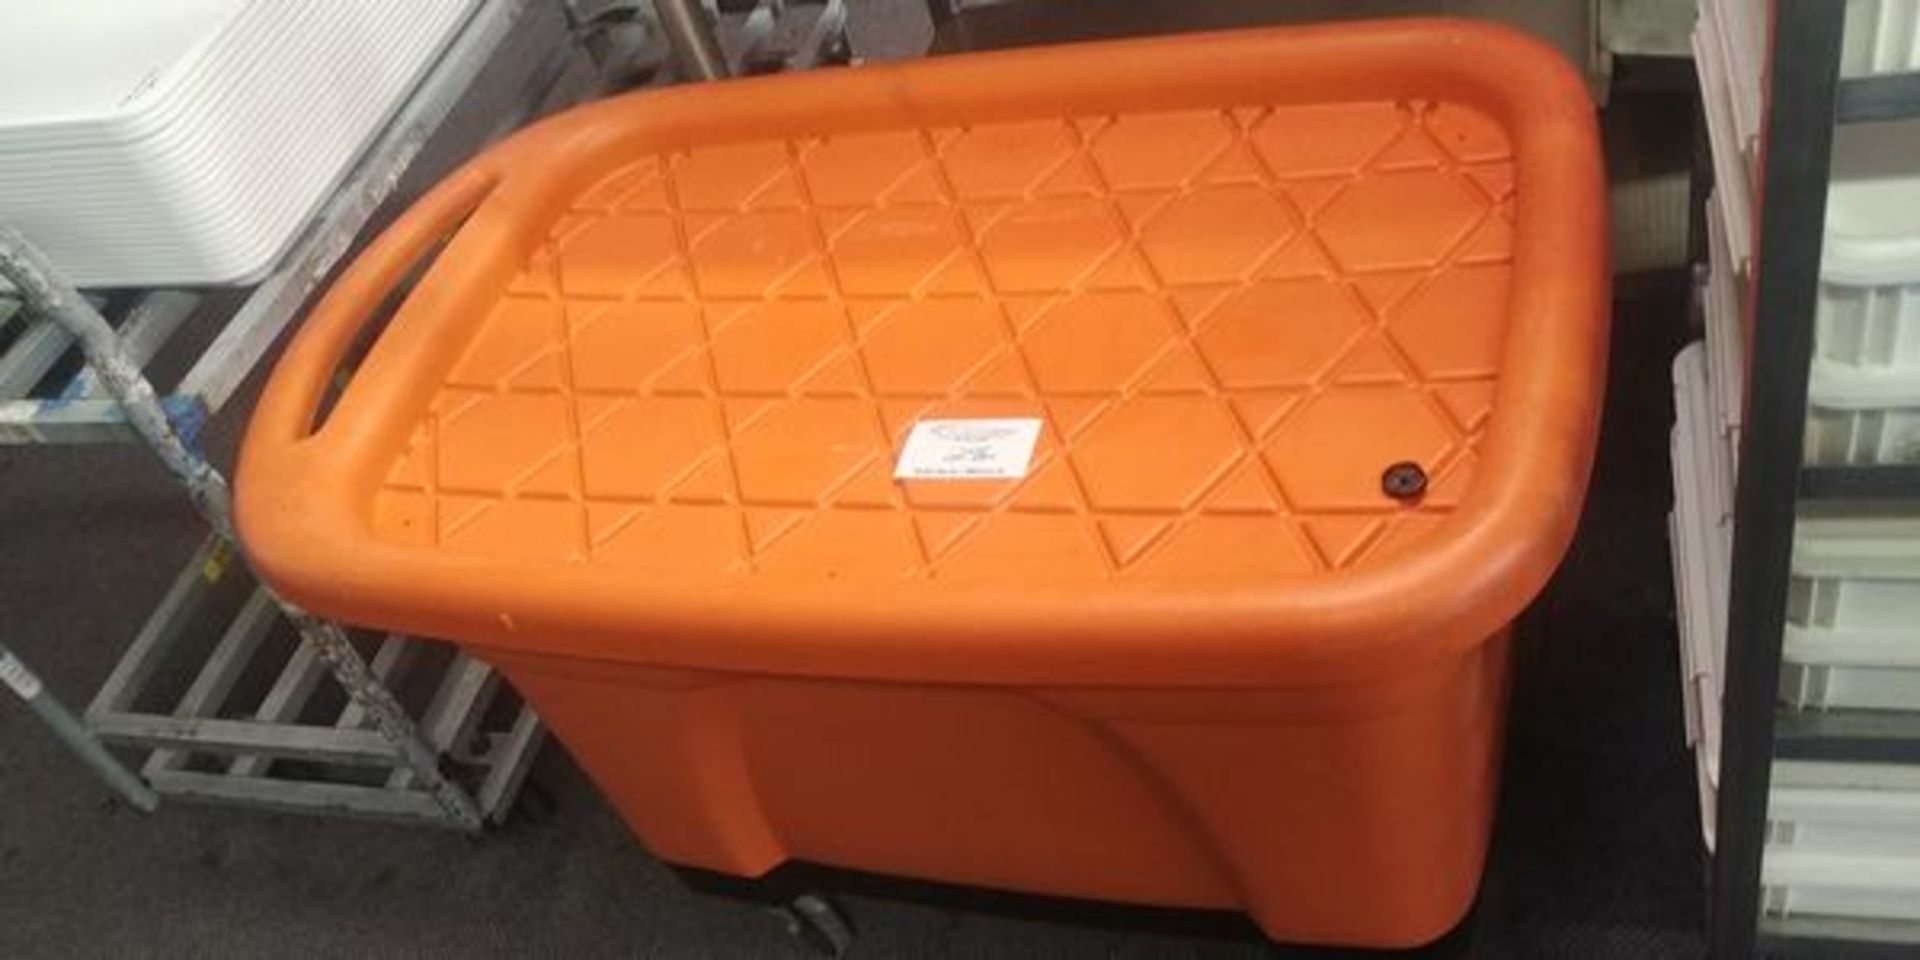 Large Orange Wash Tub on Casters